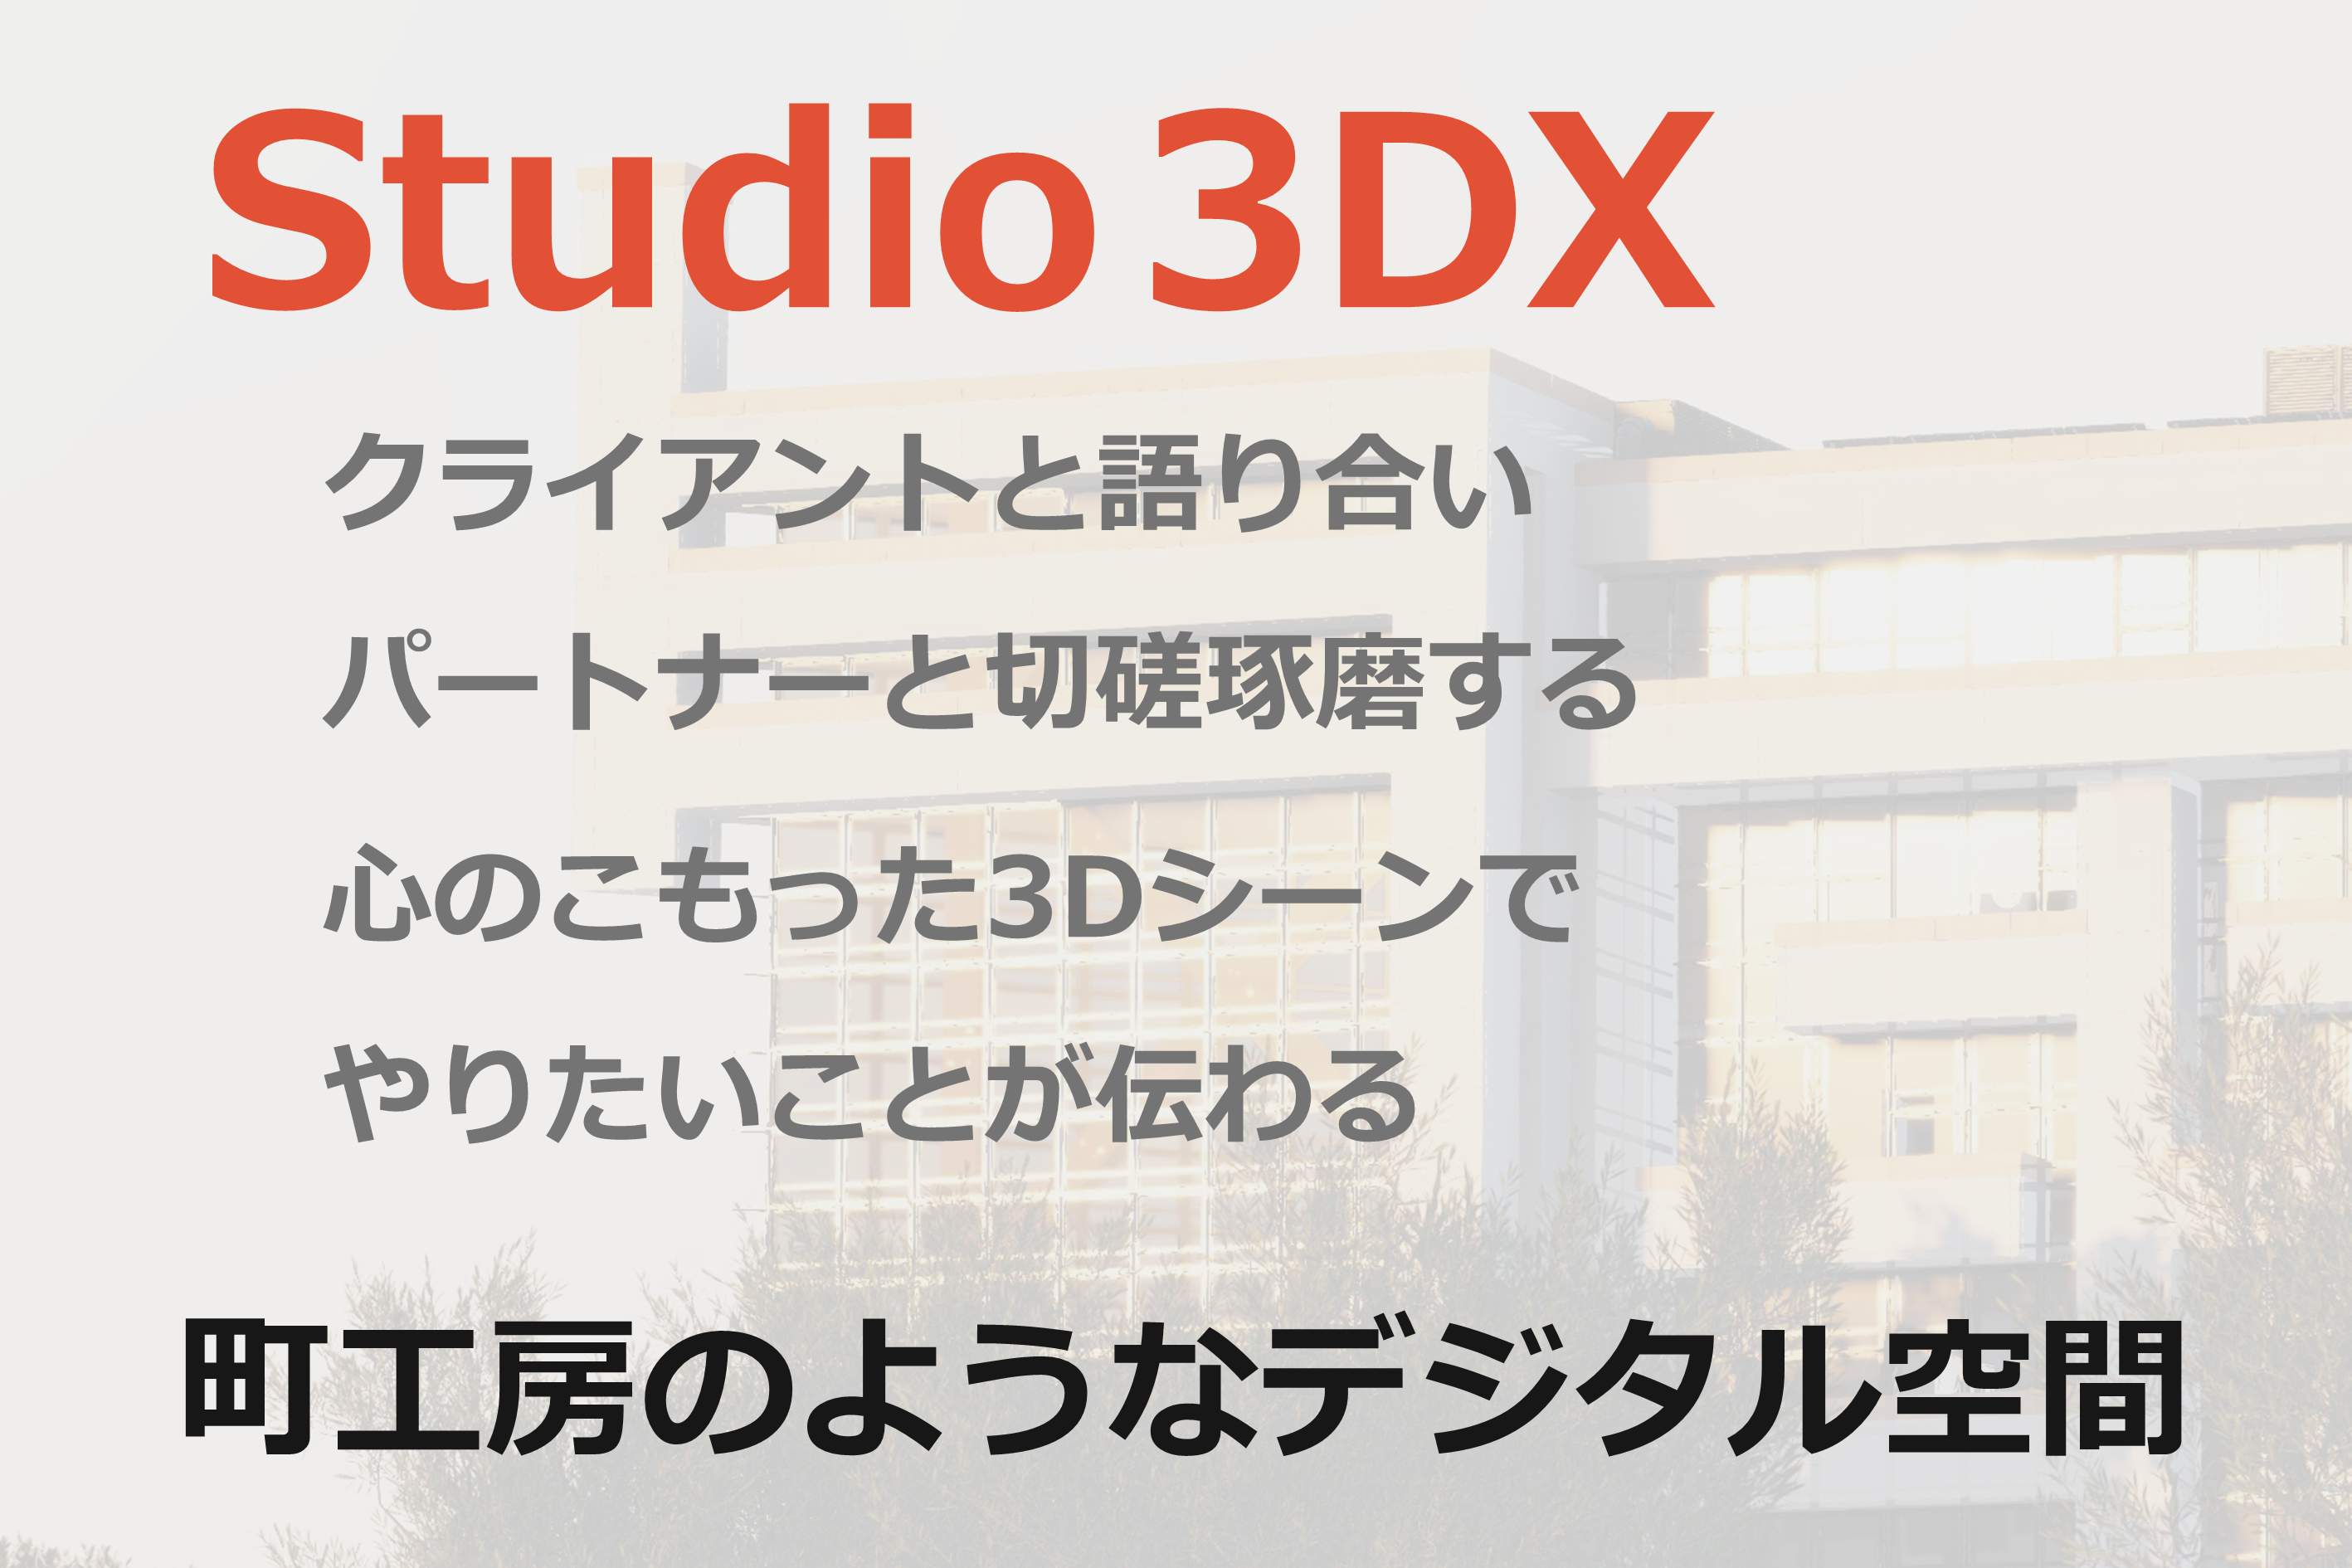 Studio 3DX
クライアントと語り合い
パートナーと切磋琢磨する
心のこもった３Dシーンで
やりたいことが伝わる
町工房のようなデジタル空間